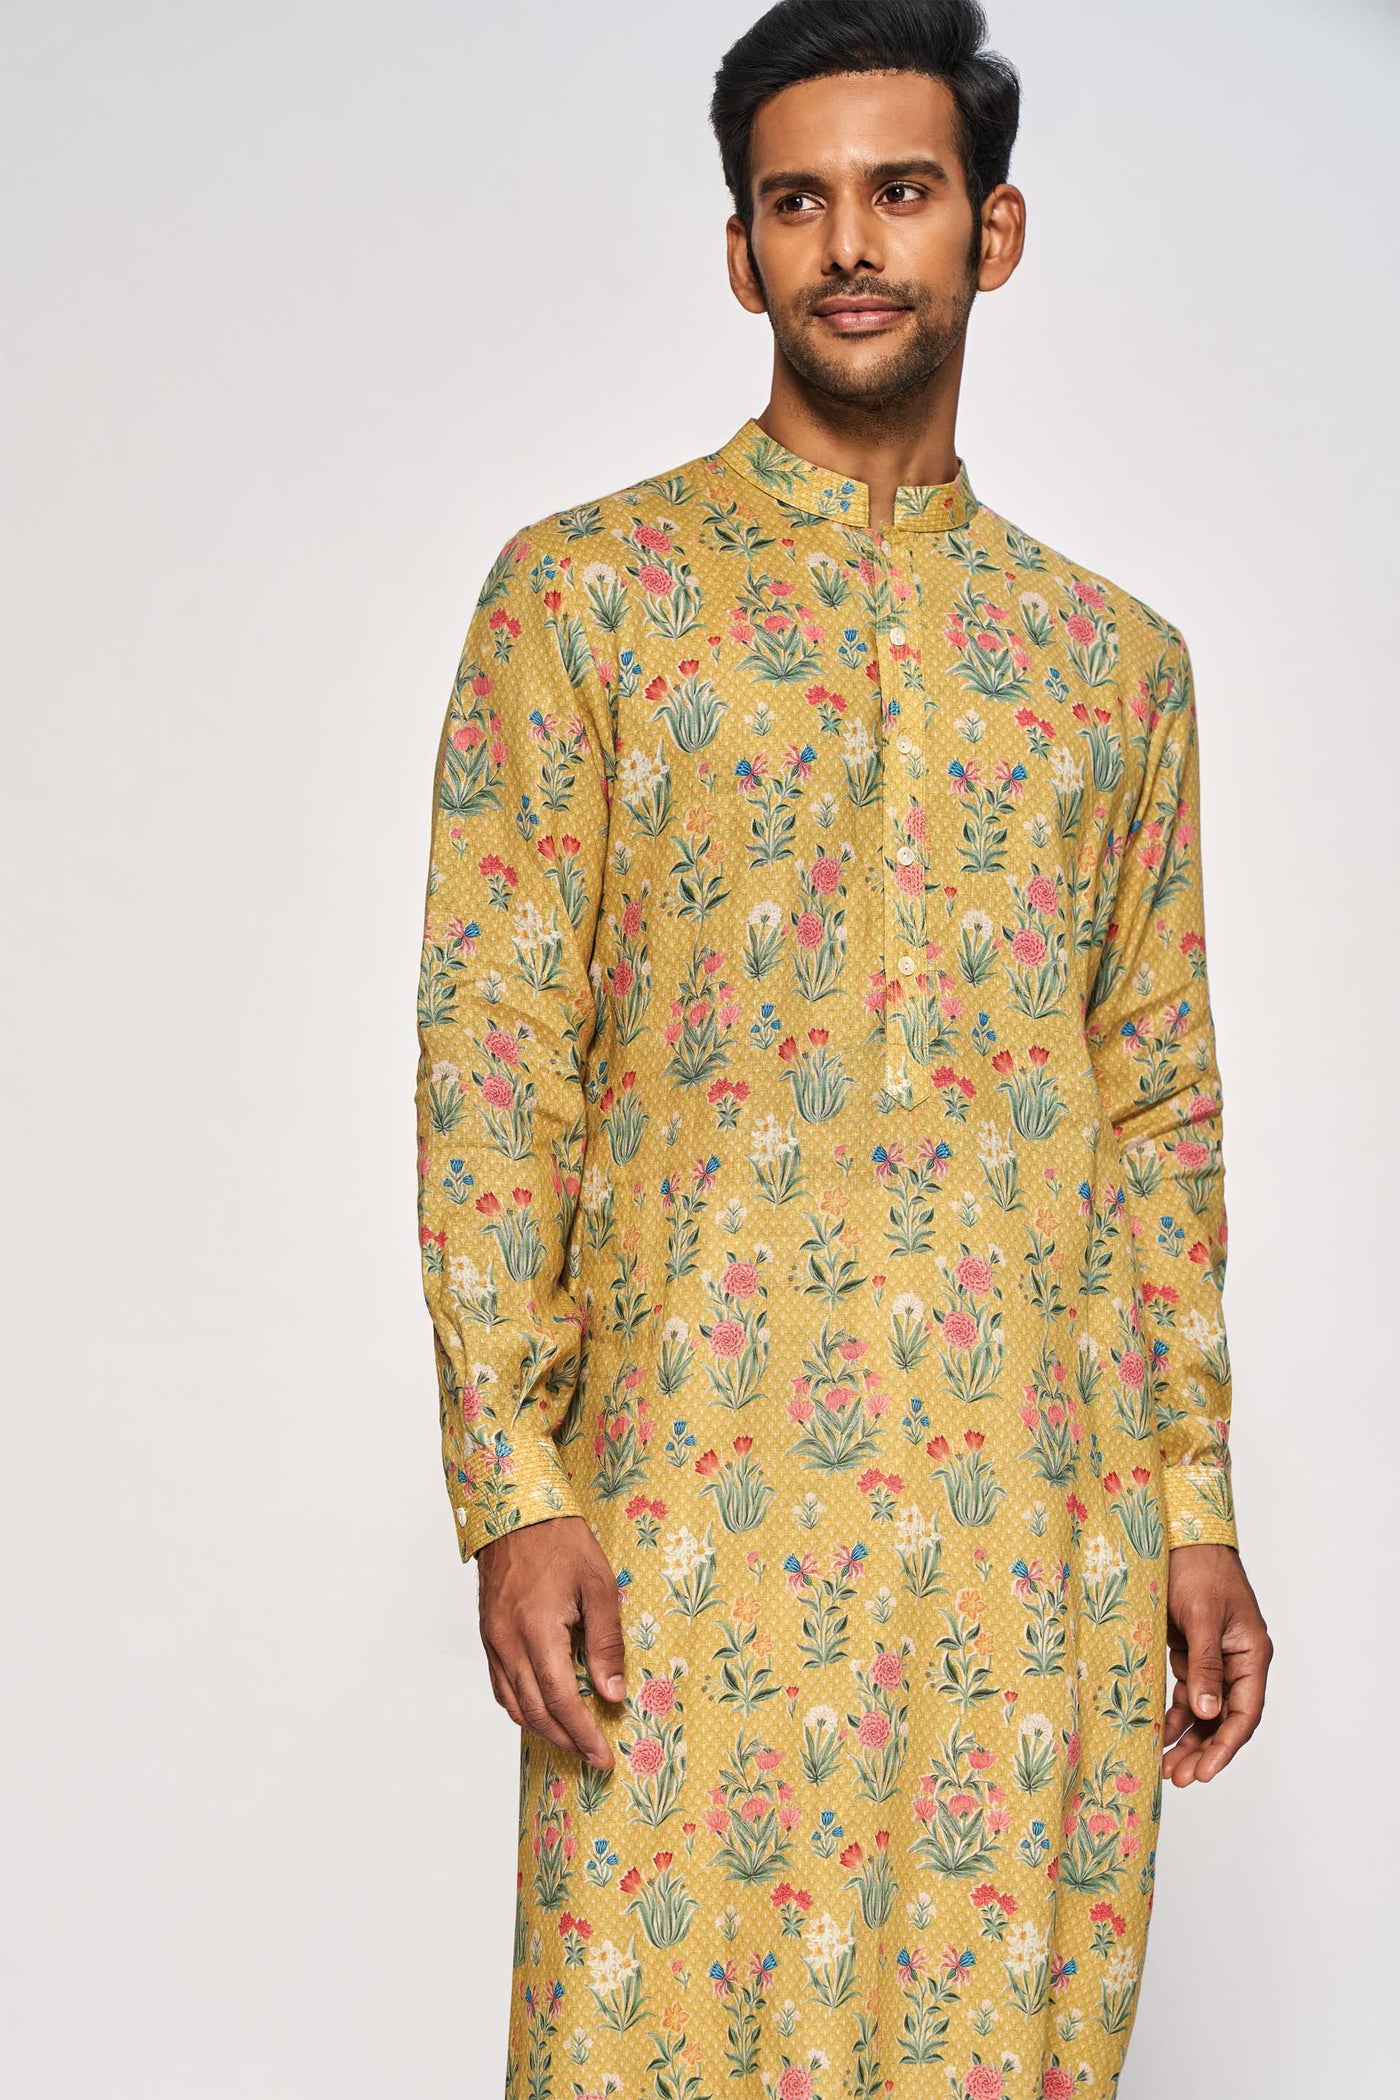 Anita Dongre menswear Vanshul Kurta Mustard festive indian designer wear online shopping melange singapore